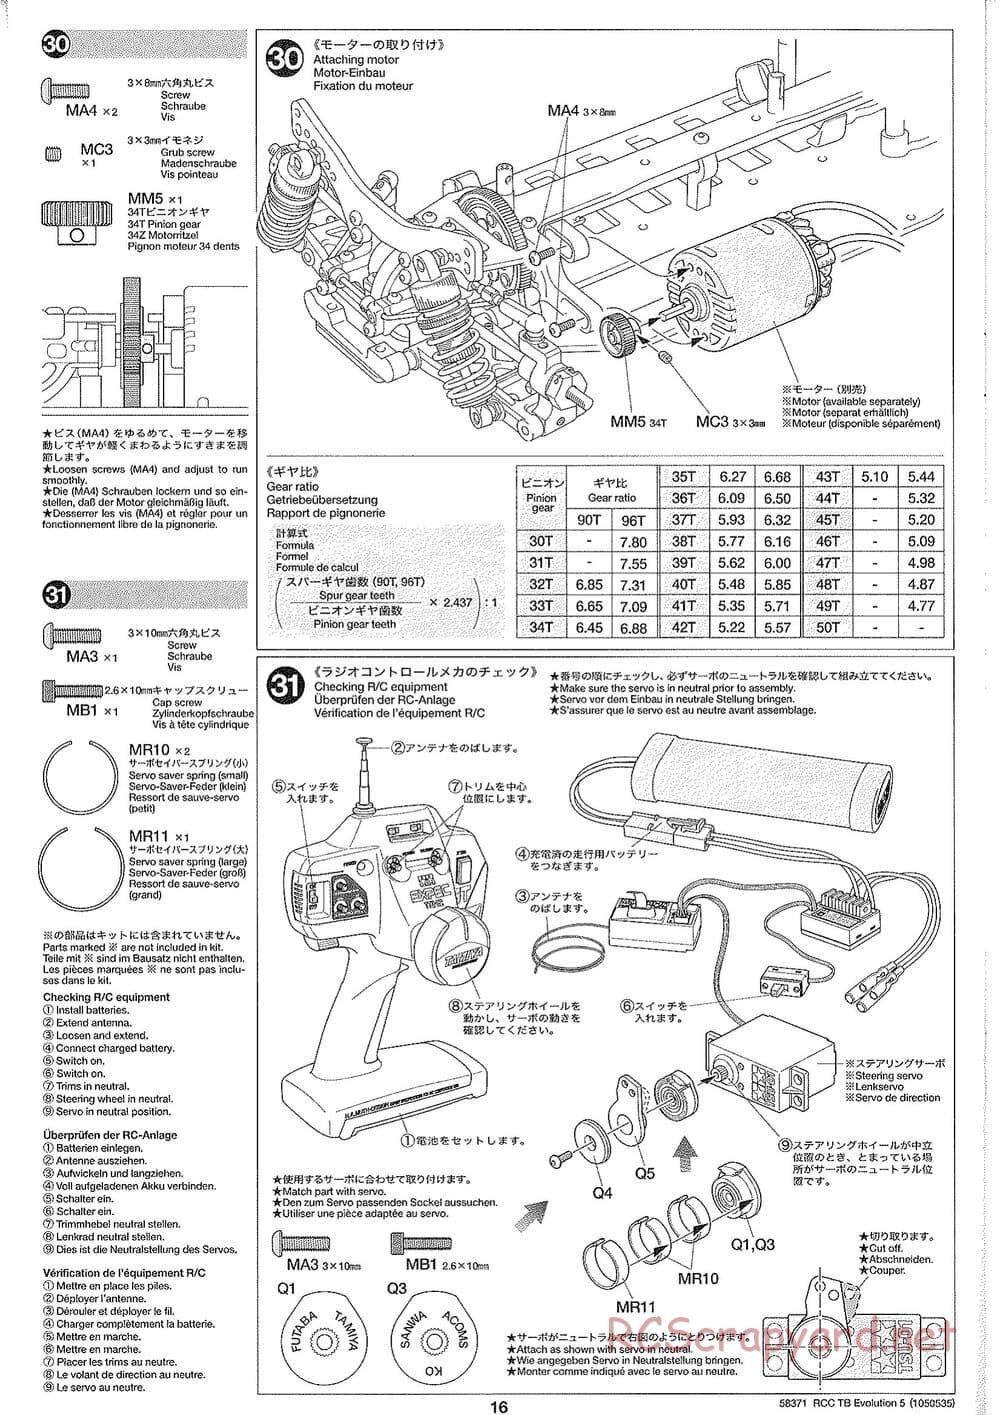 Tamiya - TB Evolution V Chassis - Manual - Page 16